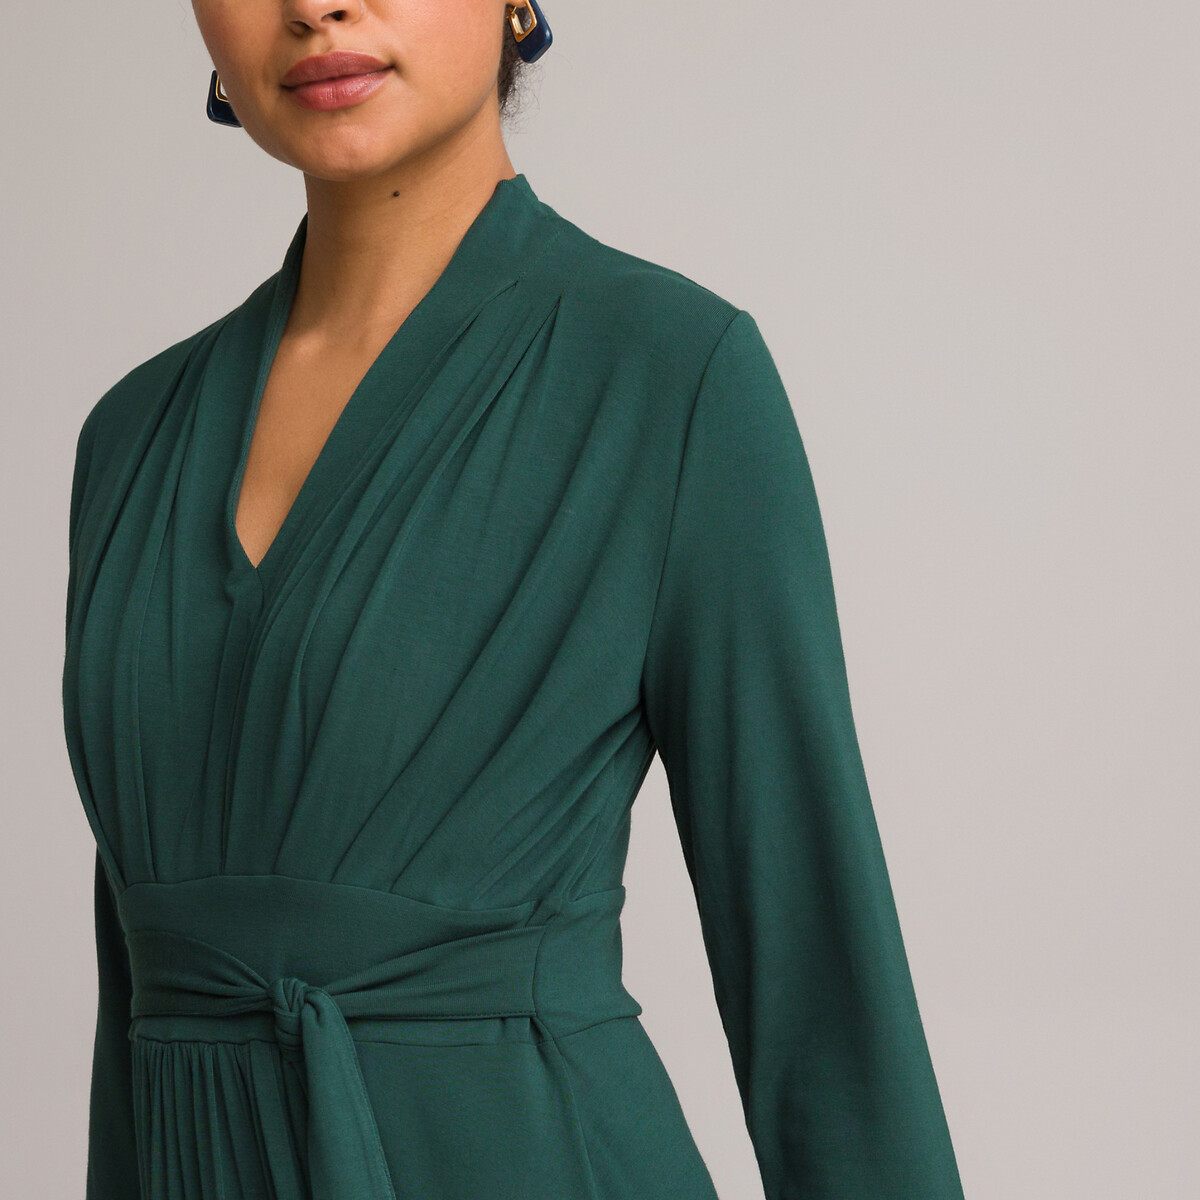 Платье ANNE WEYBURN Платье Расклешенное из струящегося трикотажа с рукавами 34 46 зеленый, размер 46 - фото 3